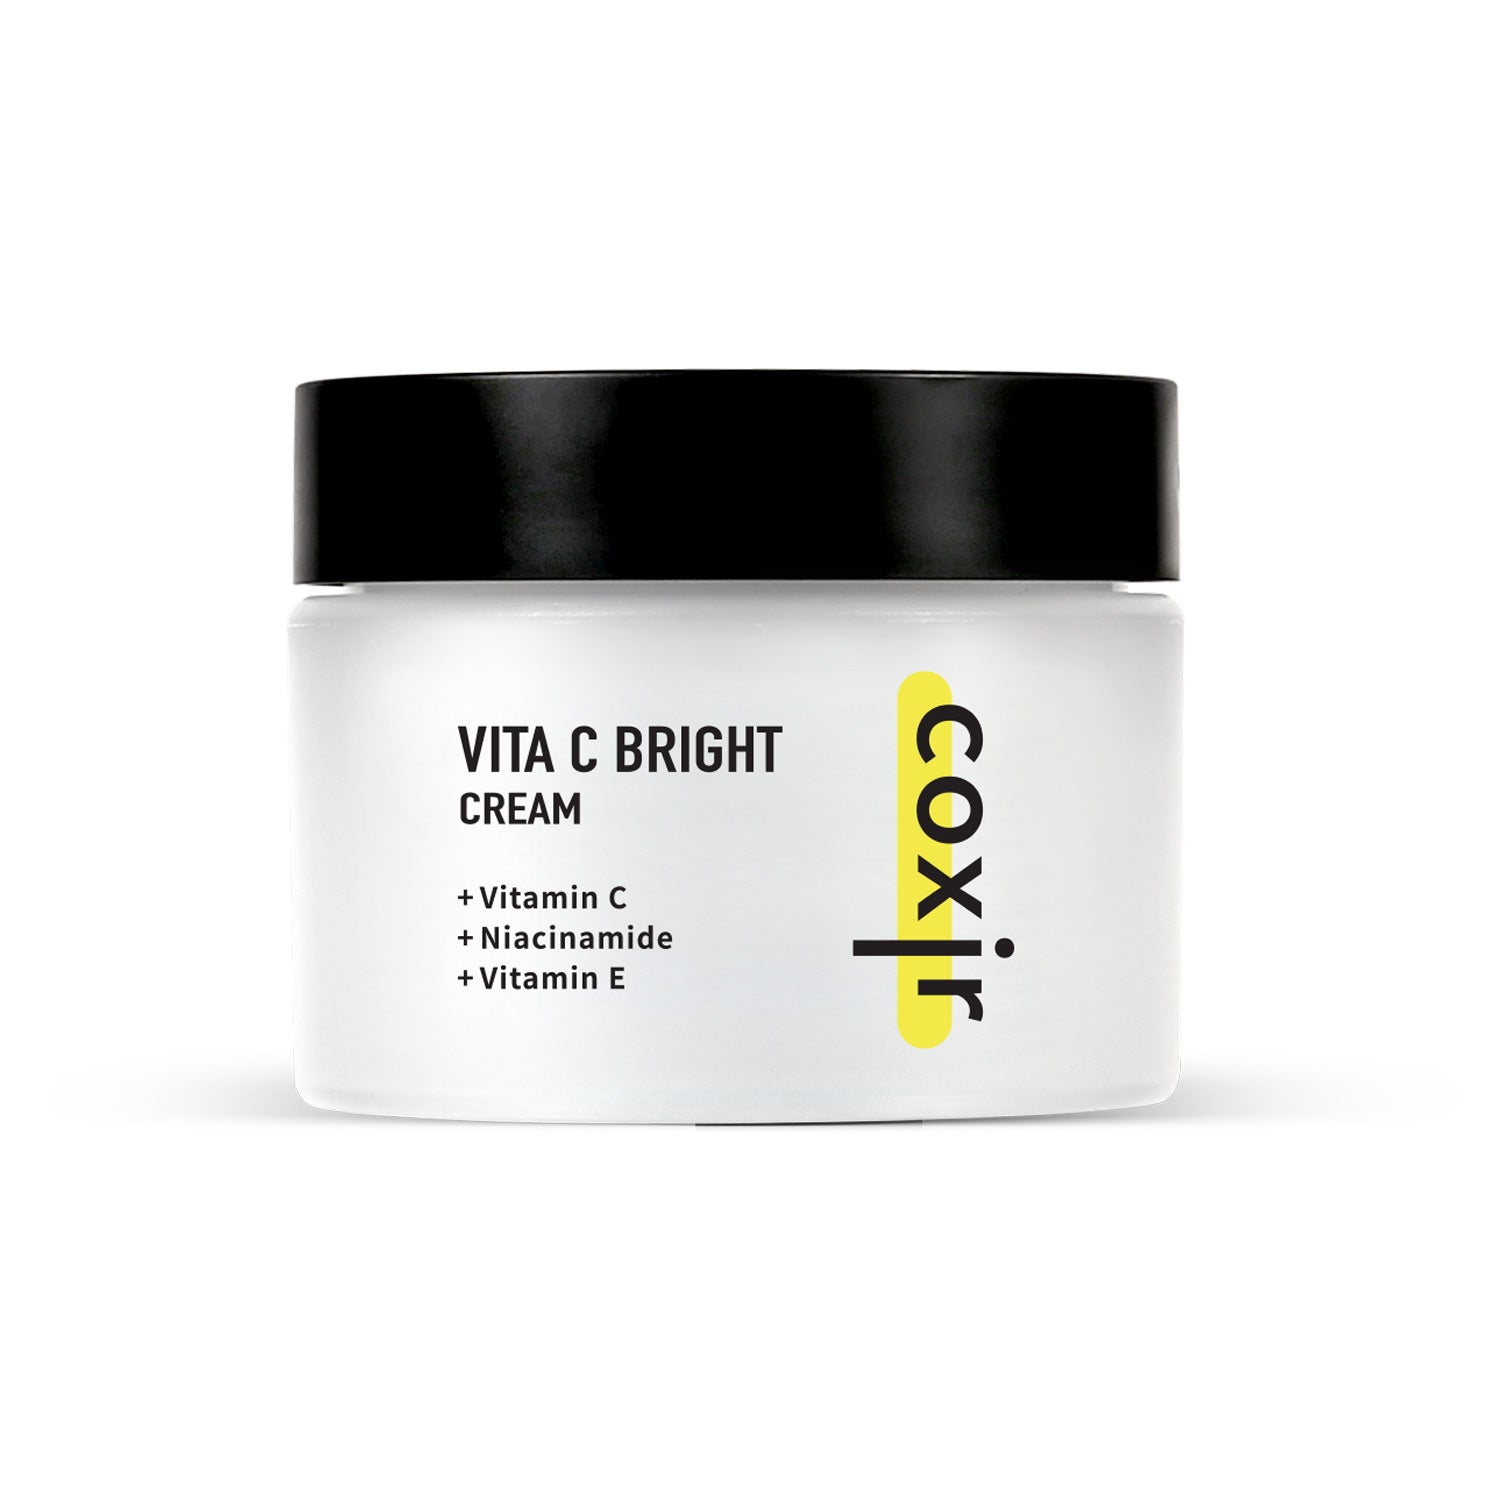 Vita C Bright Cream